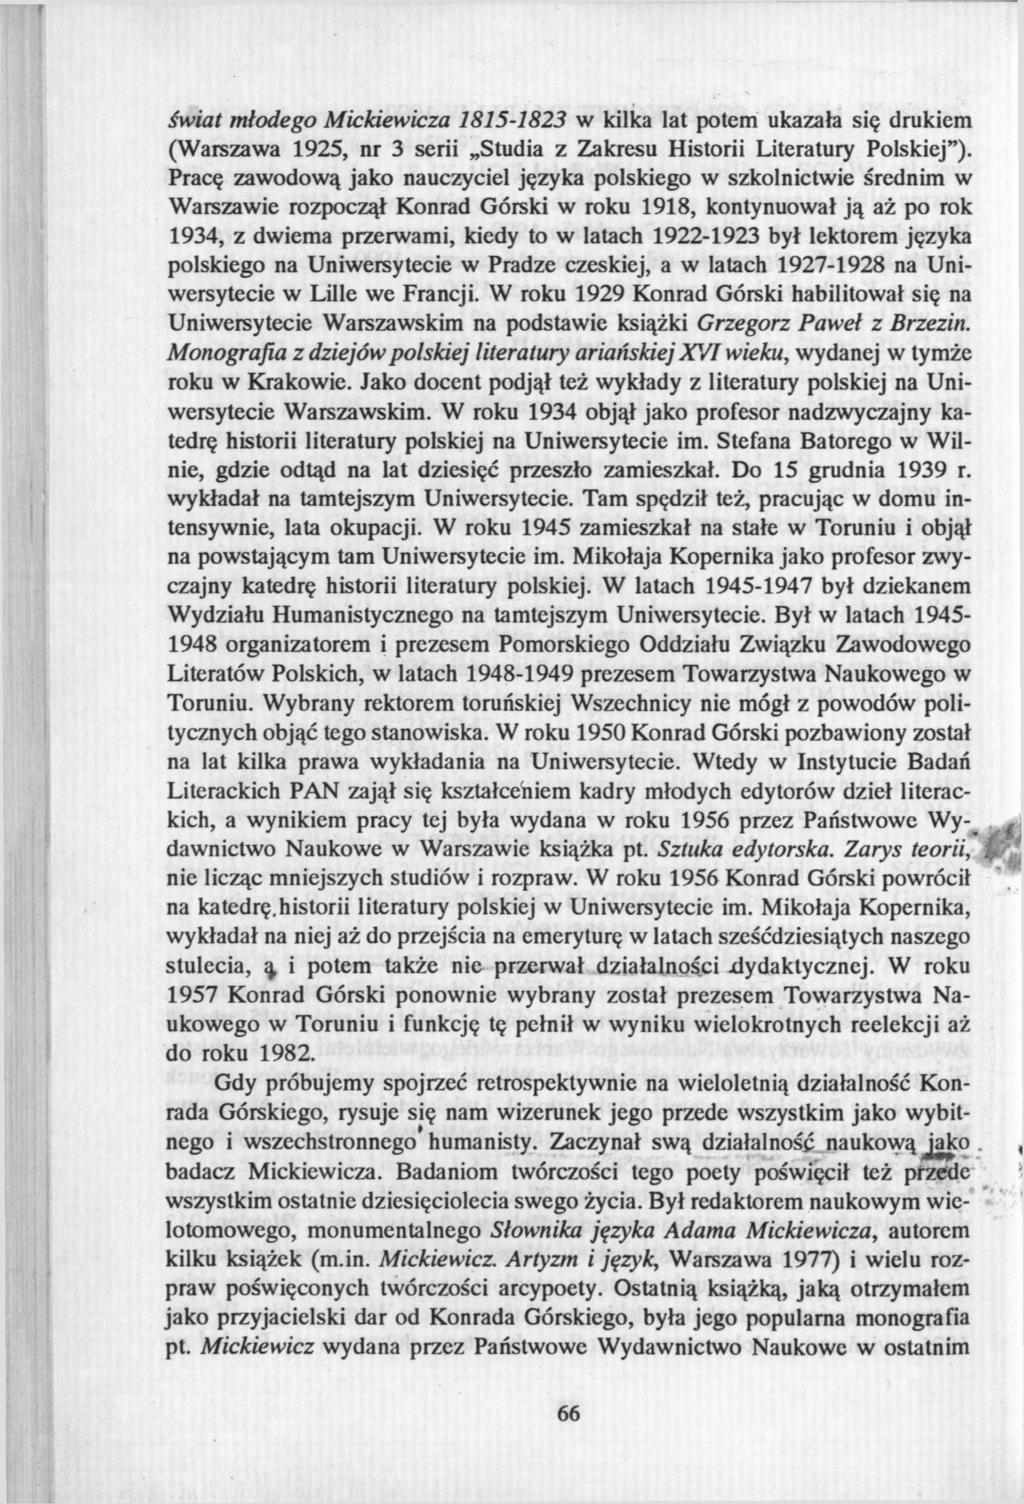 świat młodego Mickiewicza 1815-1823 w kilka lat potem ukazała się drukiem (Warszawa 1925, nr 3 serii Studia z Zakresu Historii Literatury Polskiej").